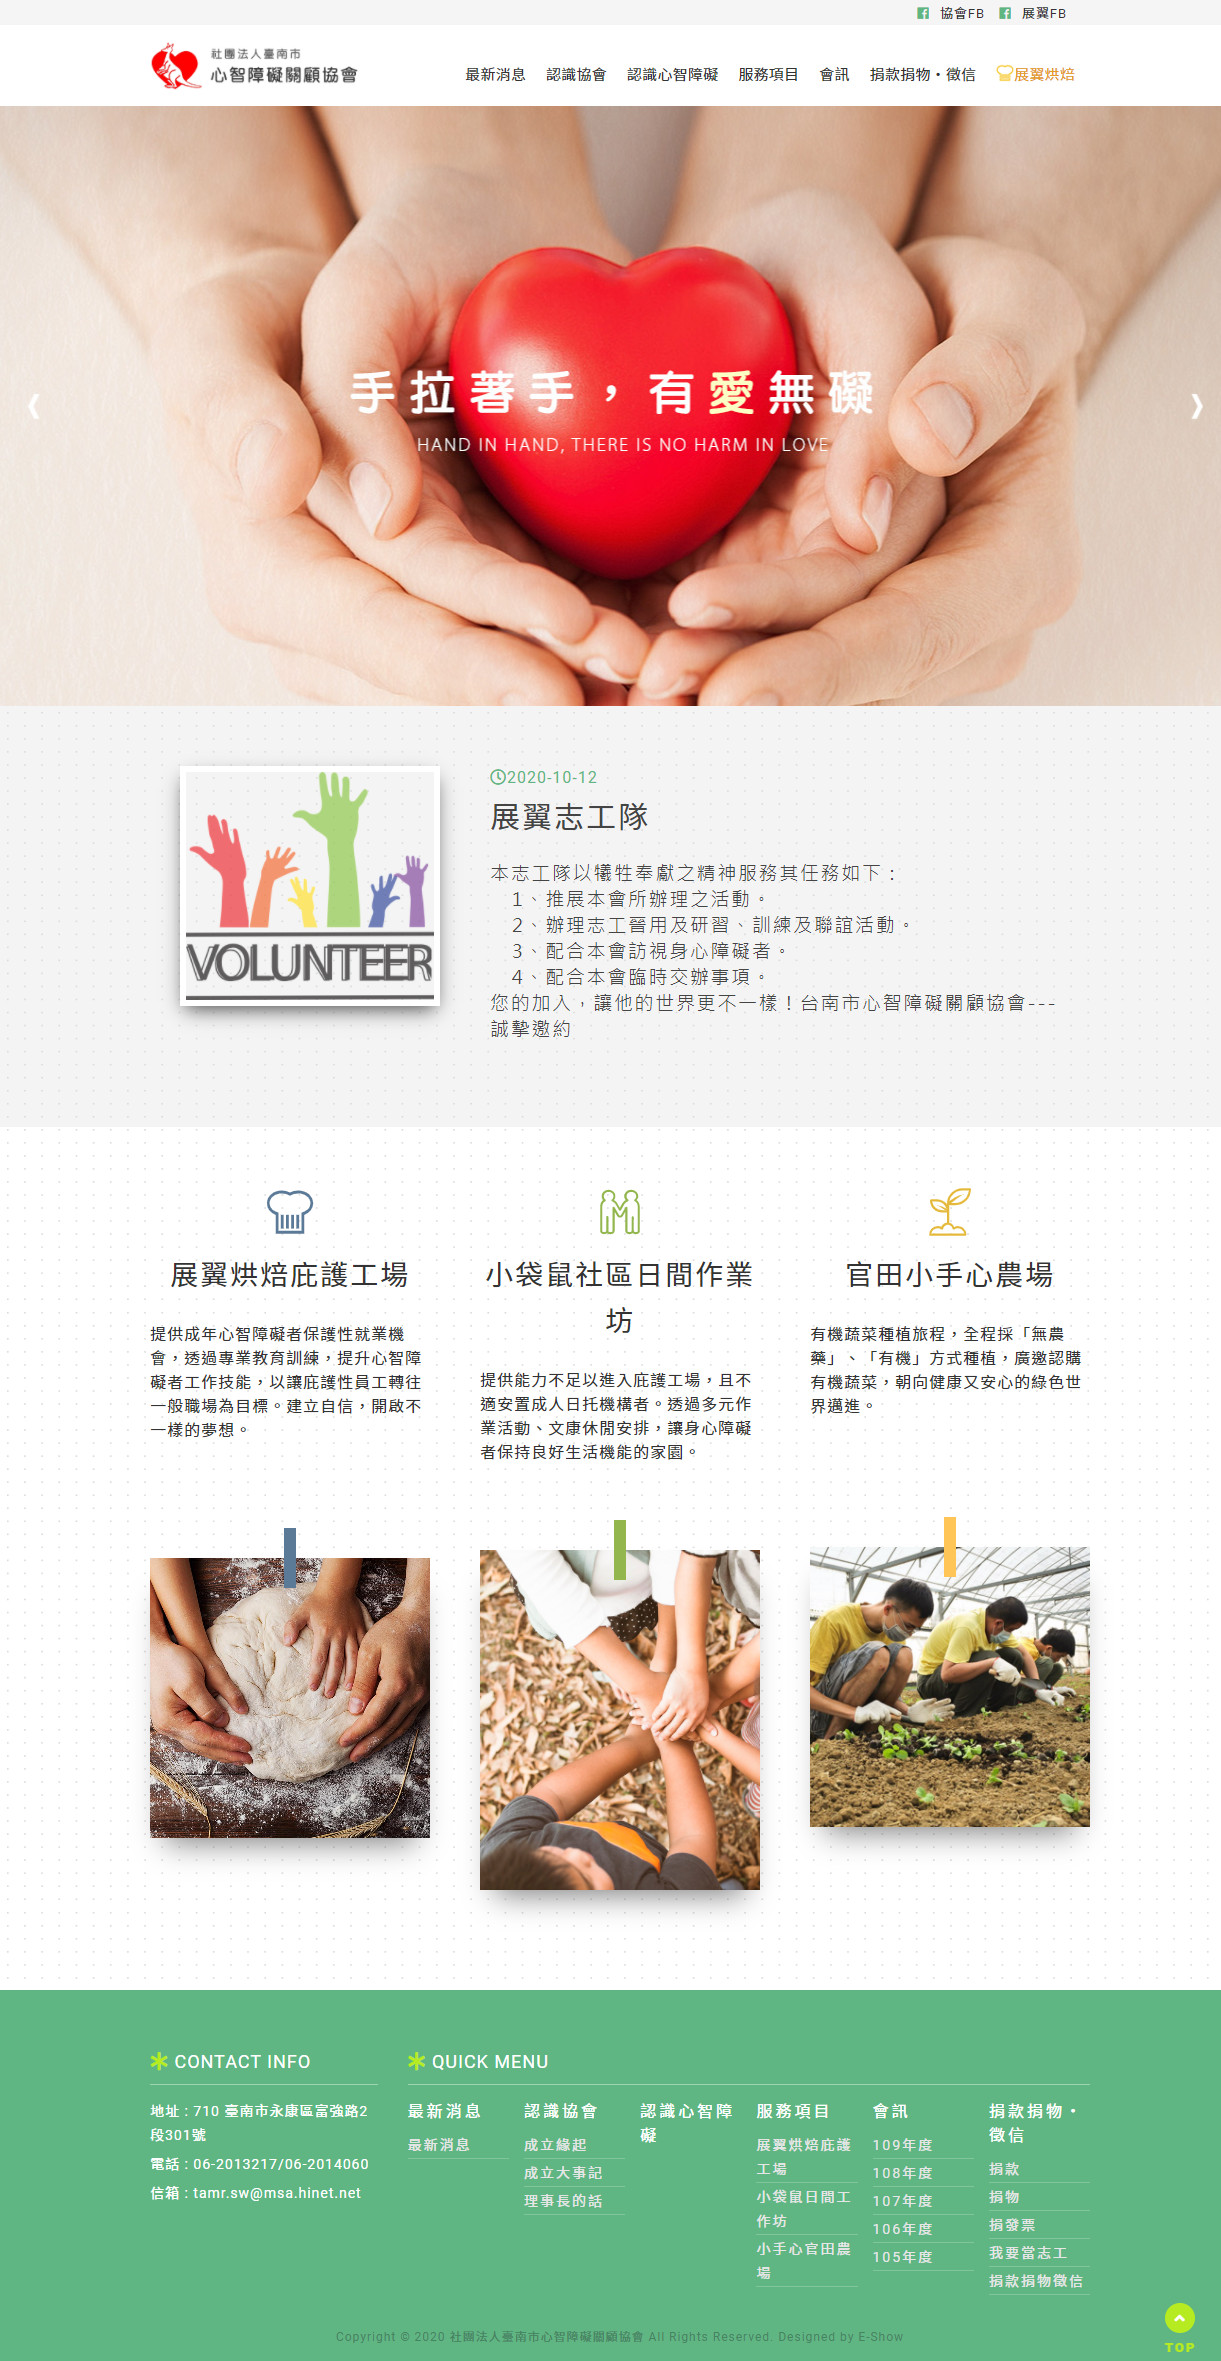 社團法人臺南市心智障礙關顧協會 響應式RWD網站設計
網站設計